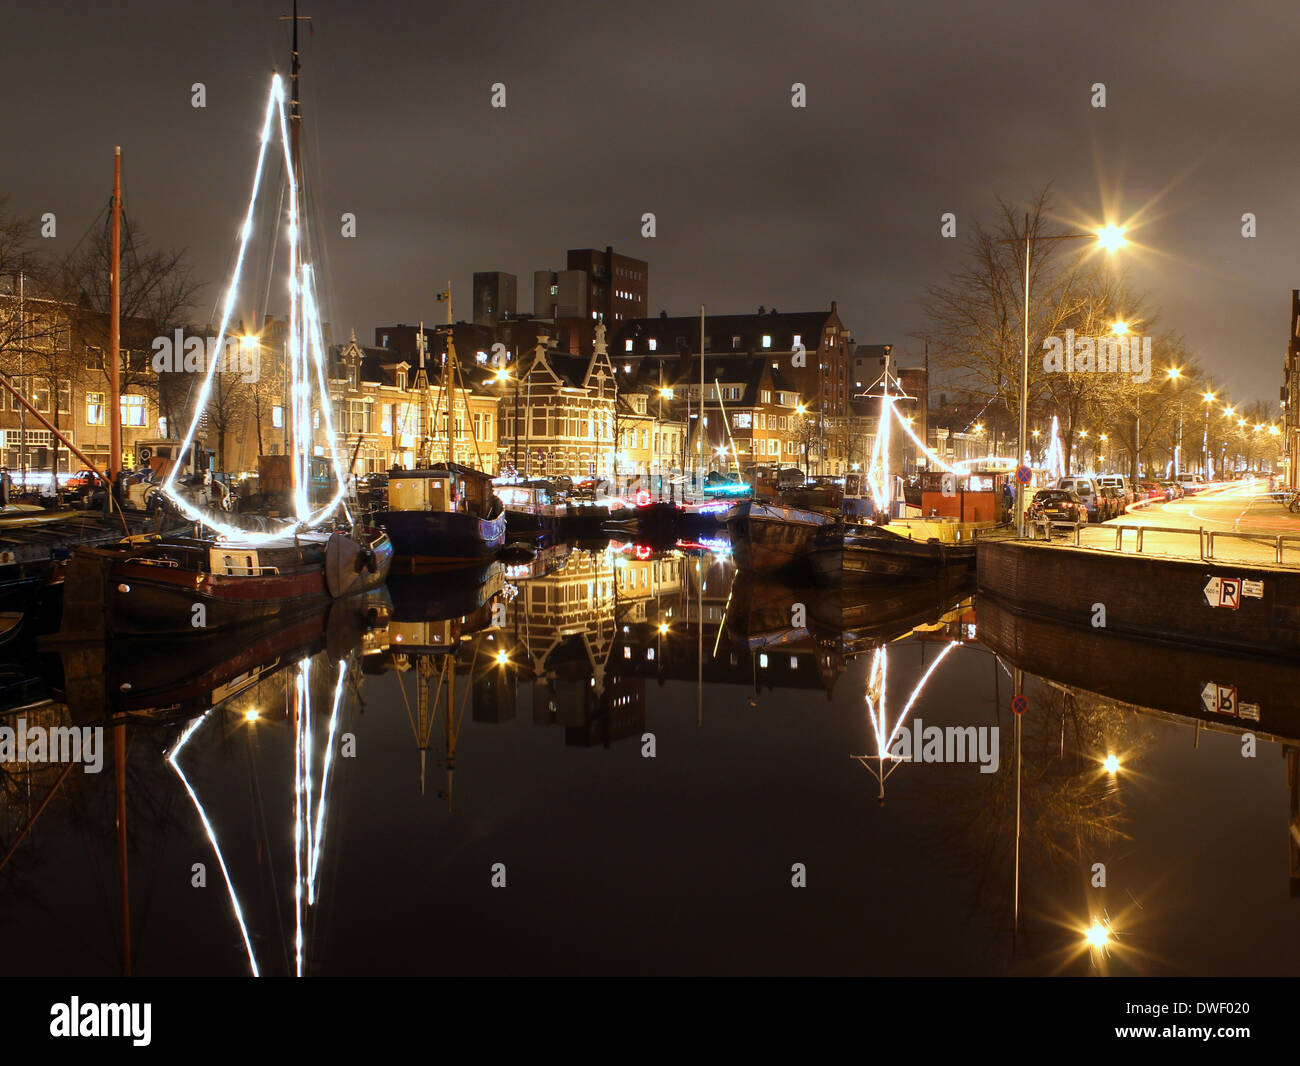 Les entrepôts et les navires à voile le long des canaux à Noorderhaven (nord du port) de Groningen, Pays-Bas la nuit Banque D'Images